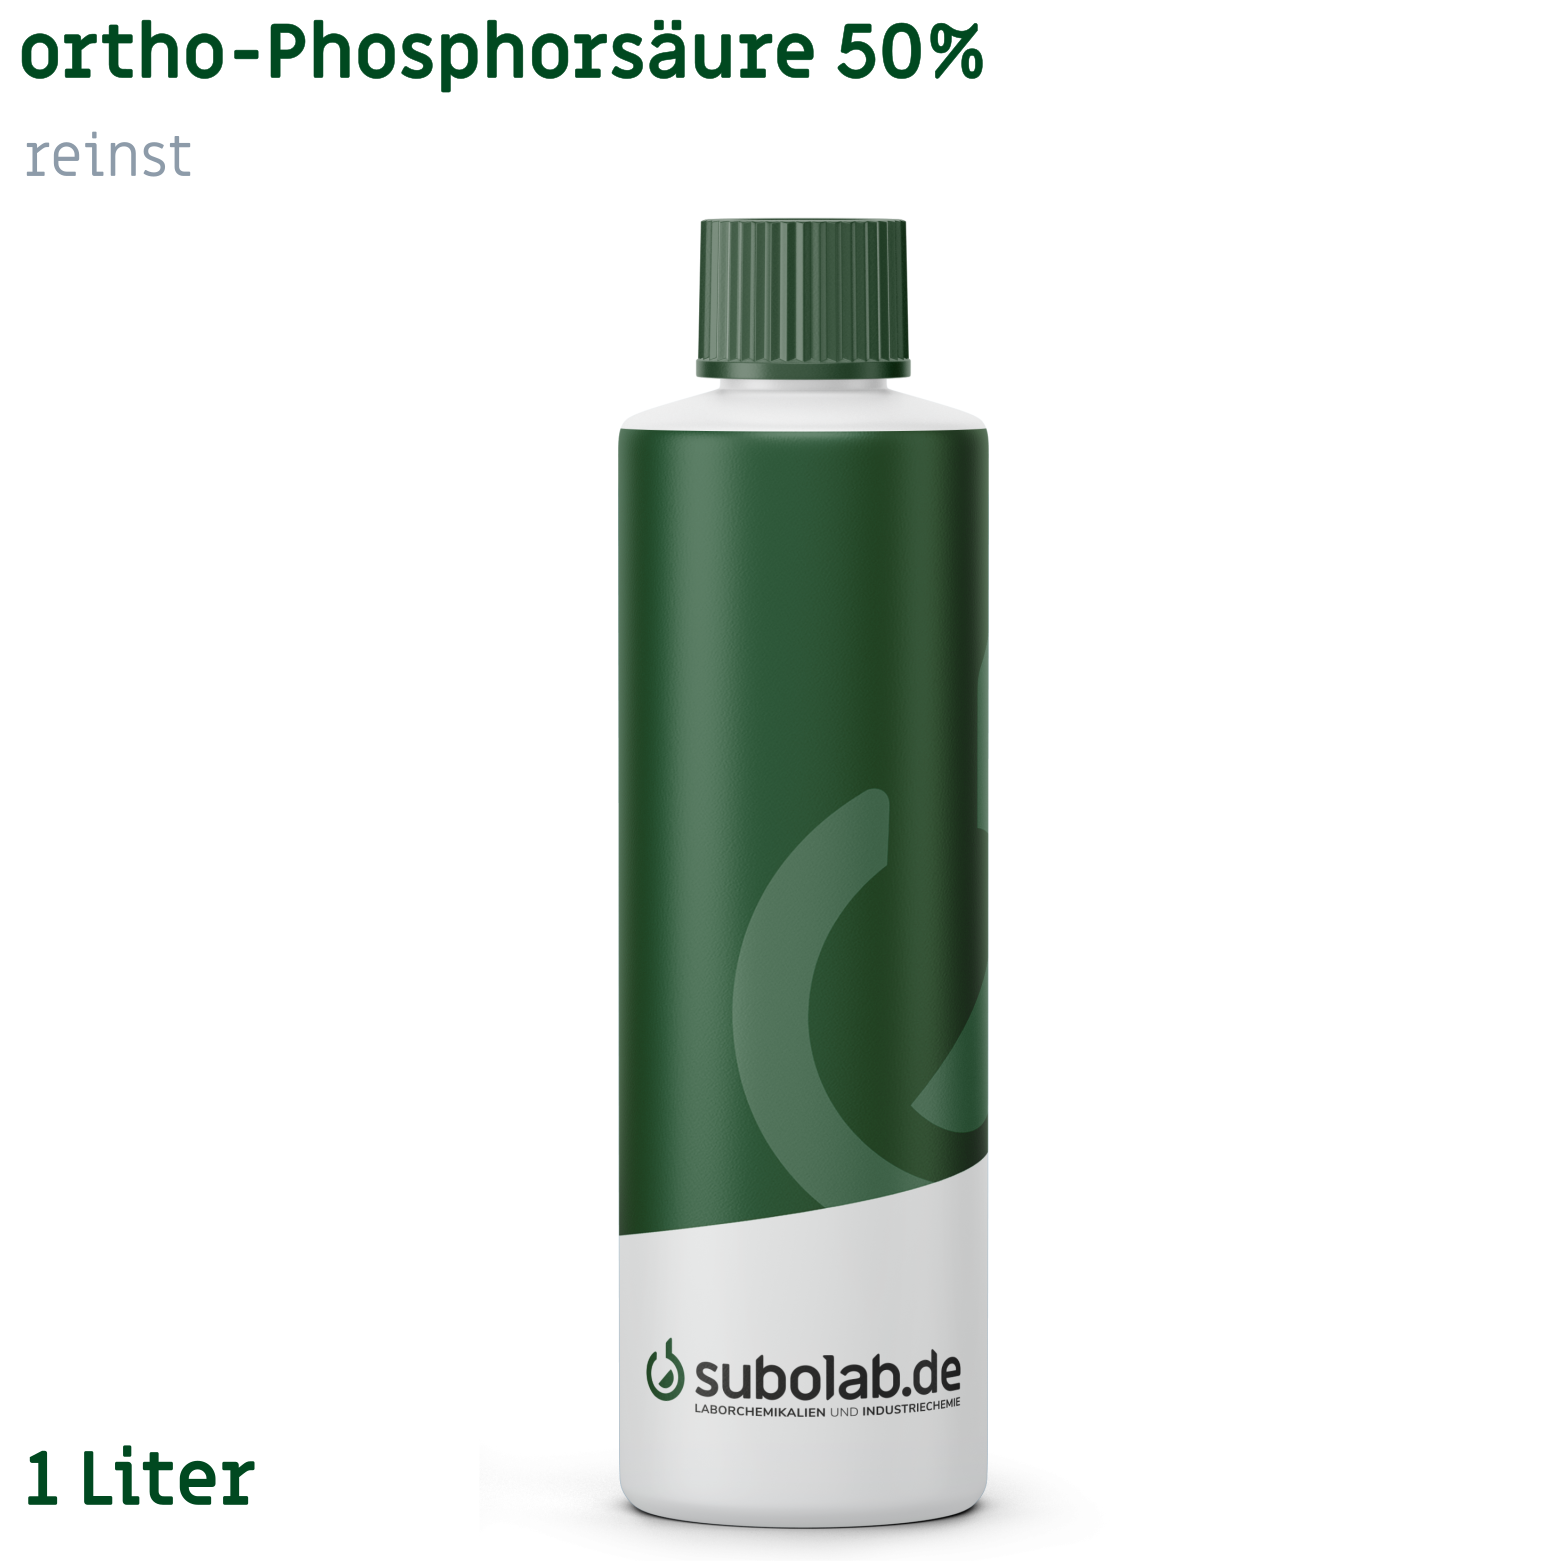 Bild von ortho-Phosphorsäure 50% reinst (1 Liter)